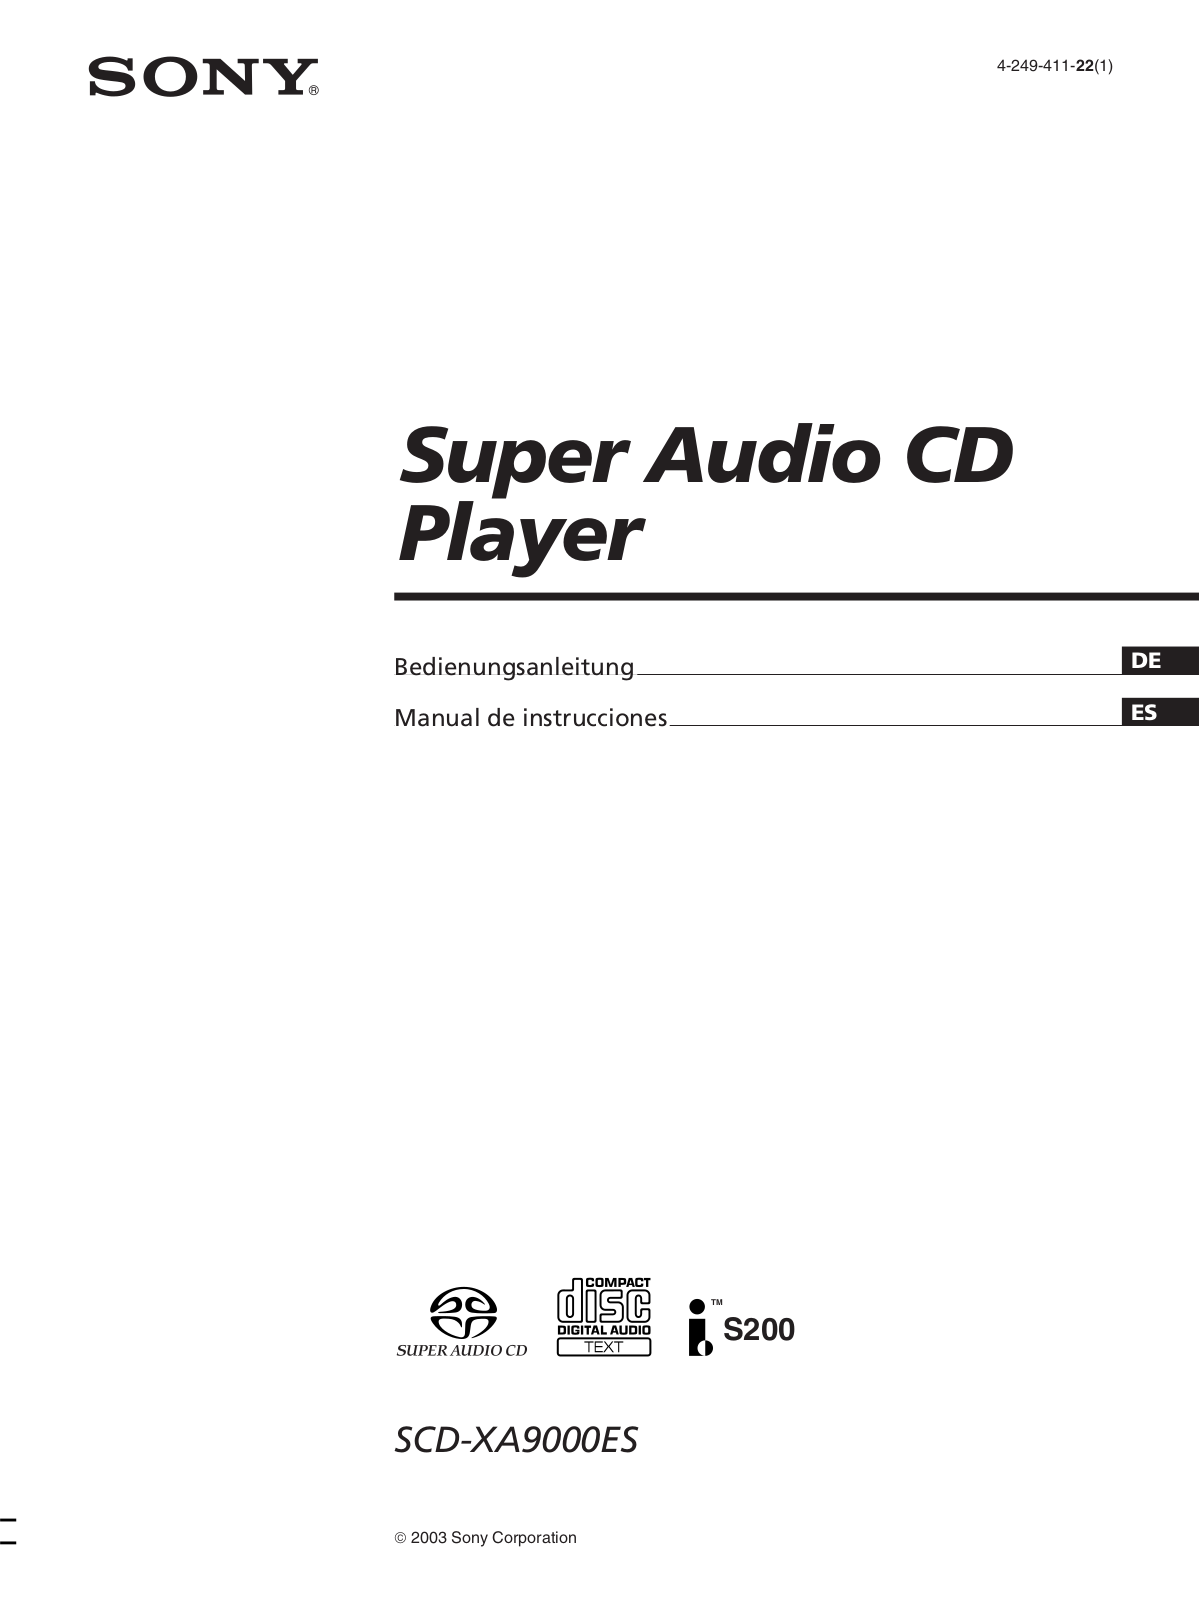 Sony SCD-XA9000ES User Manual